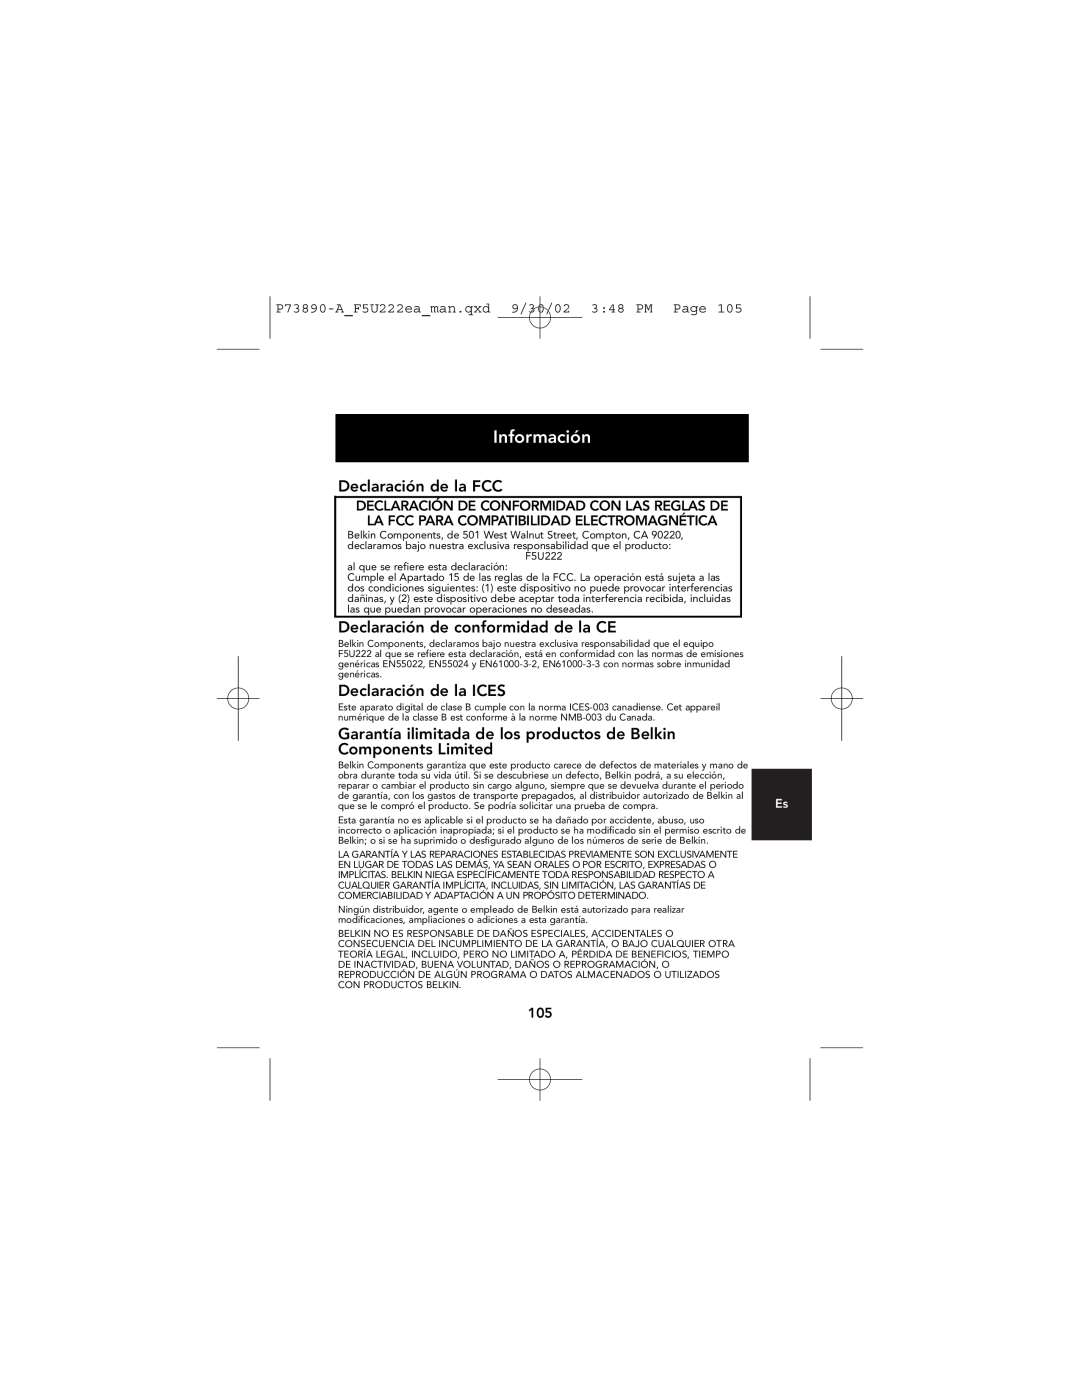 Belkin P73890EA-A manual Información, Declaración de la FCC, Declaración de conformidad de la CE, Declaración de la ICES 